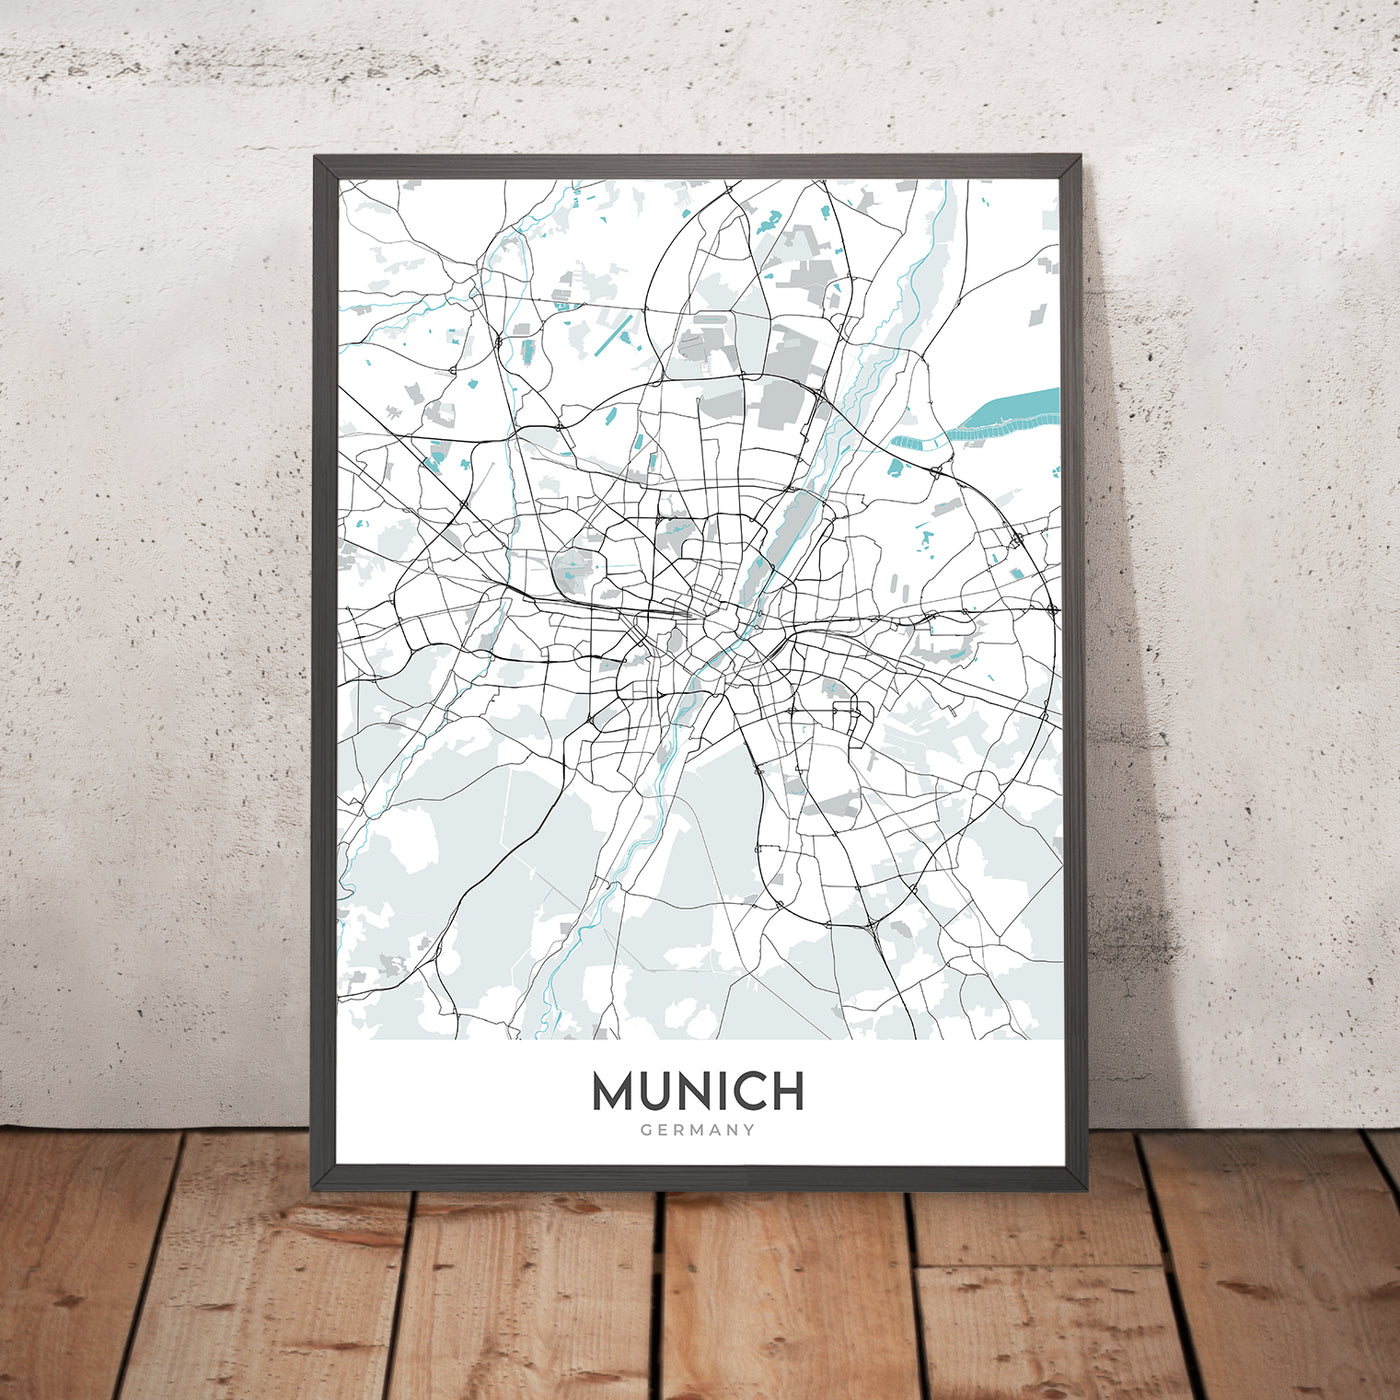 Moderner Stadtplan von München, Deutschland: Altstadt, Marienplatz, Englischer Garten, Allianz Arena, Isar